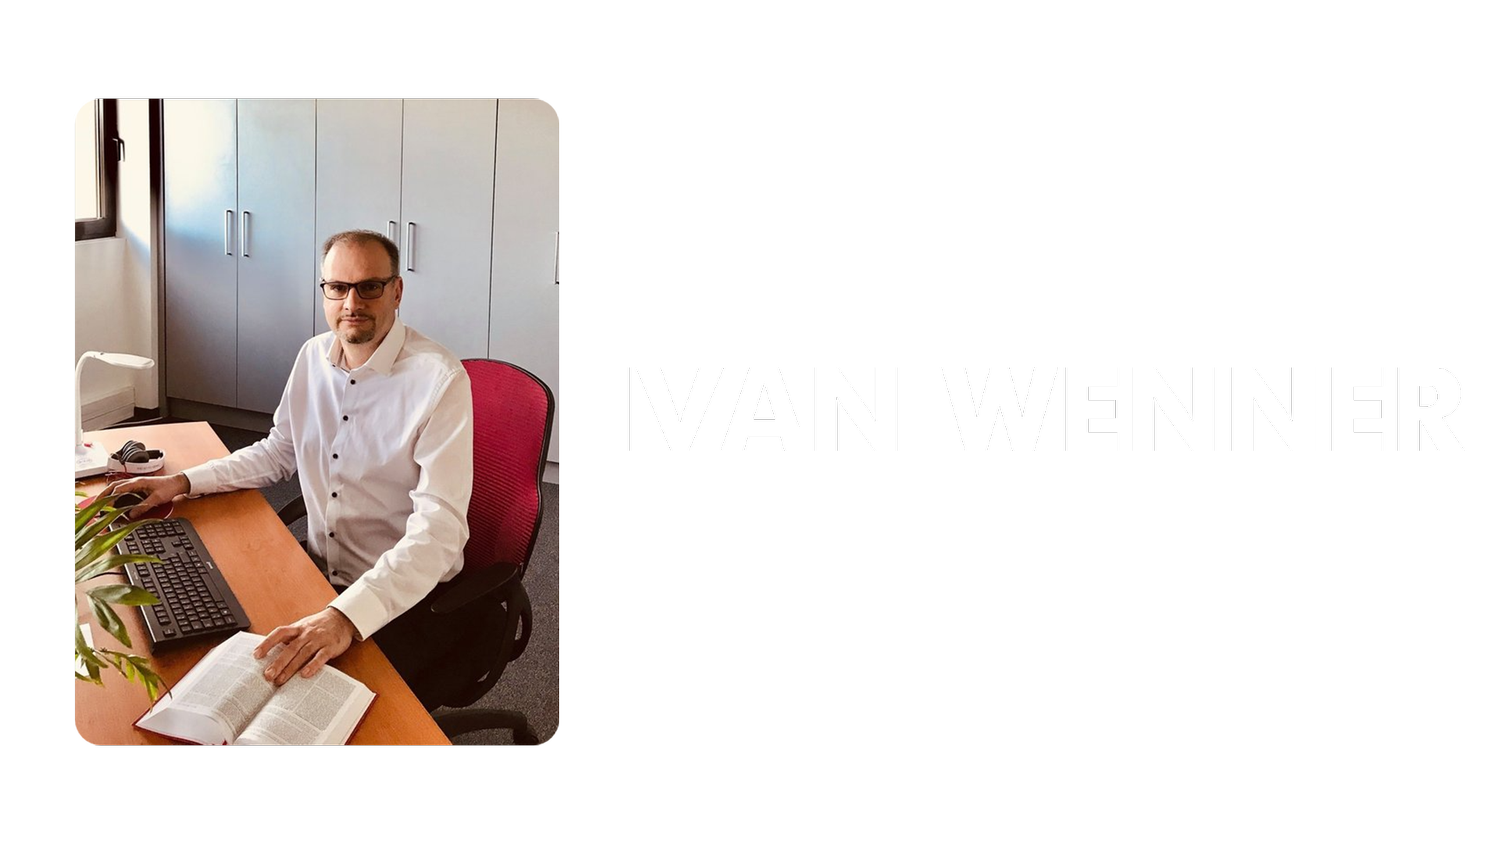 Ivan WENNER